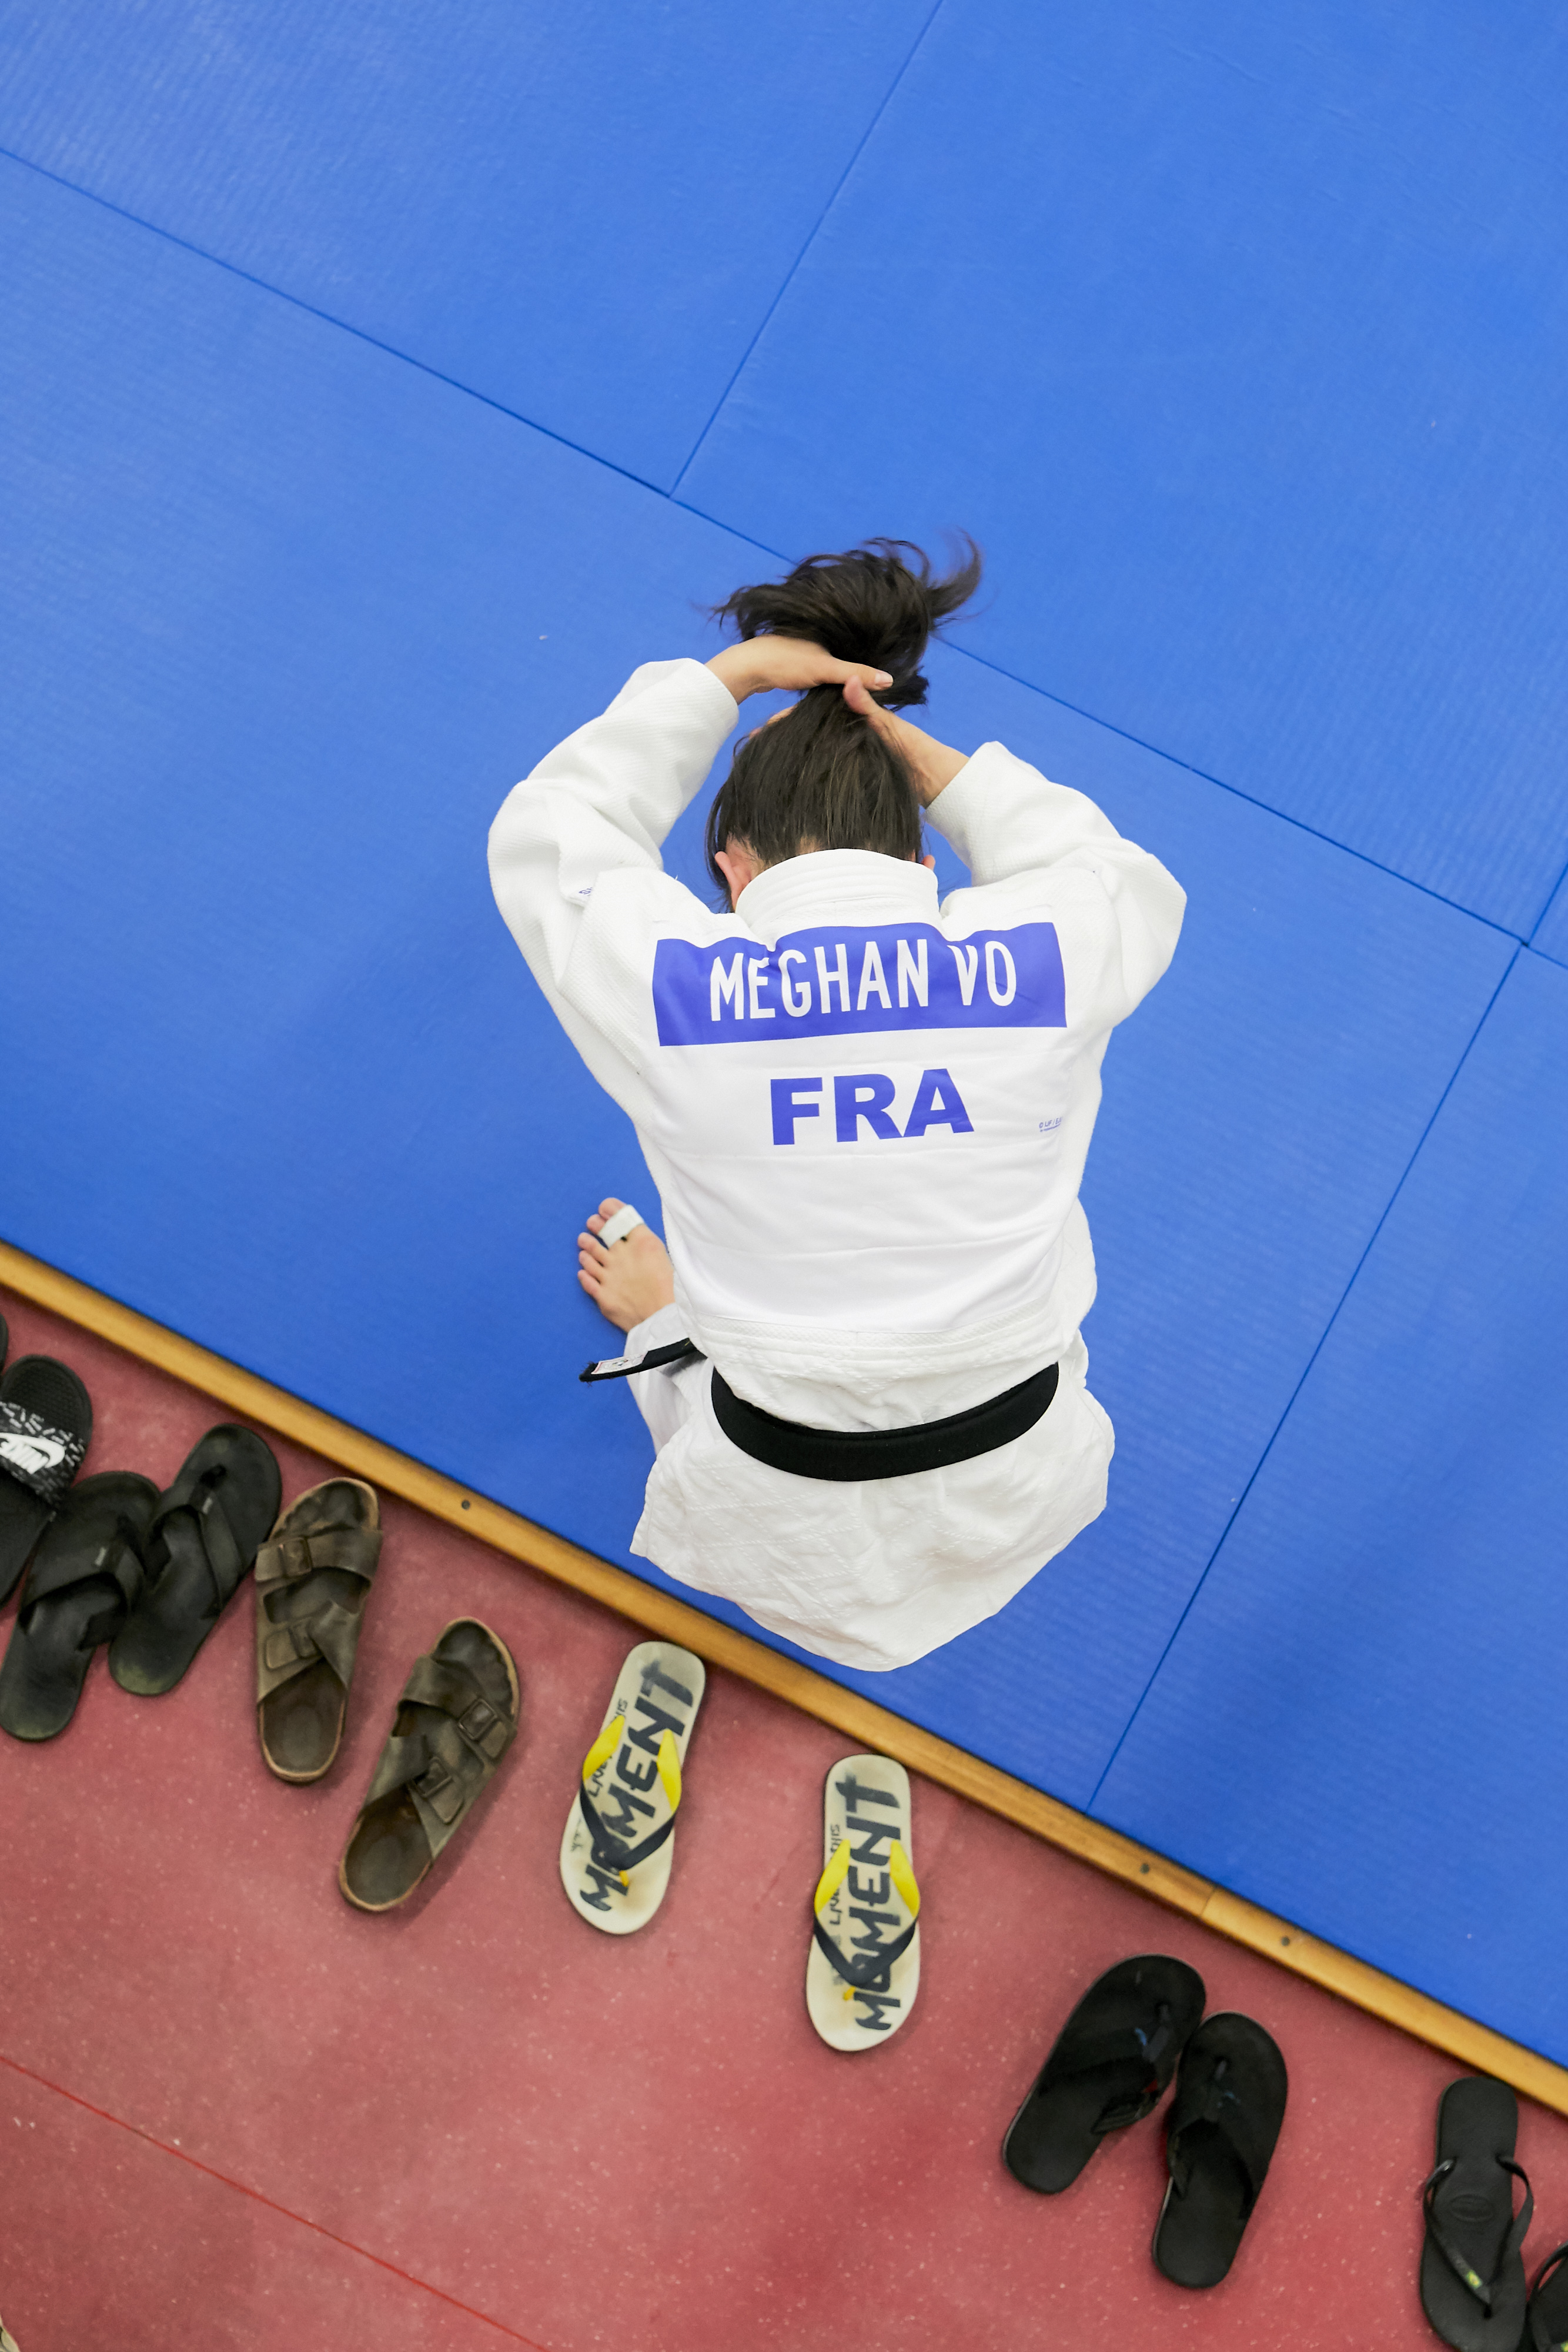 Maghan Vo boucle une année judo au sommet Saint-Laurent-du6var